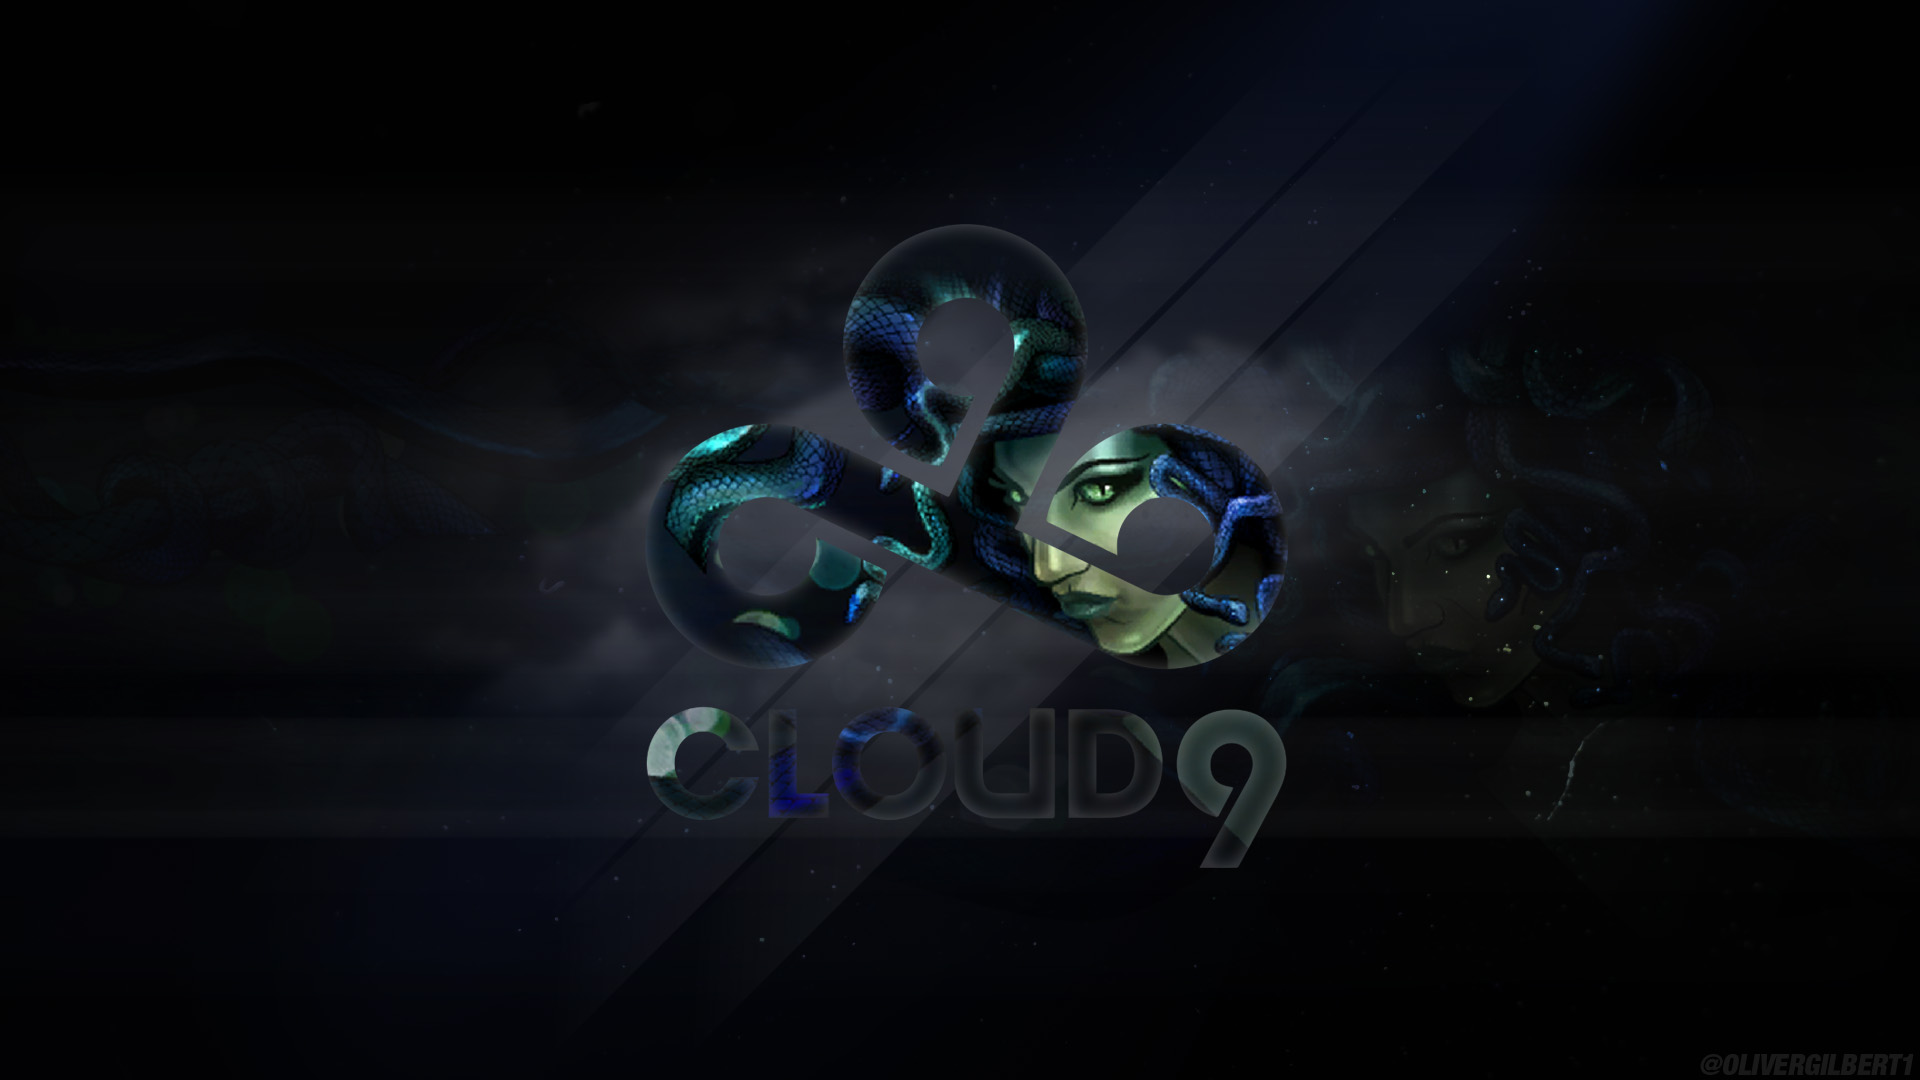 Cloud9 Wallpaper Bc Gb